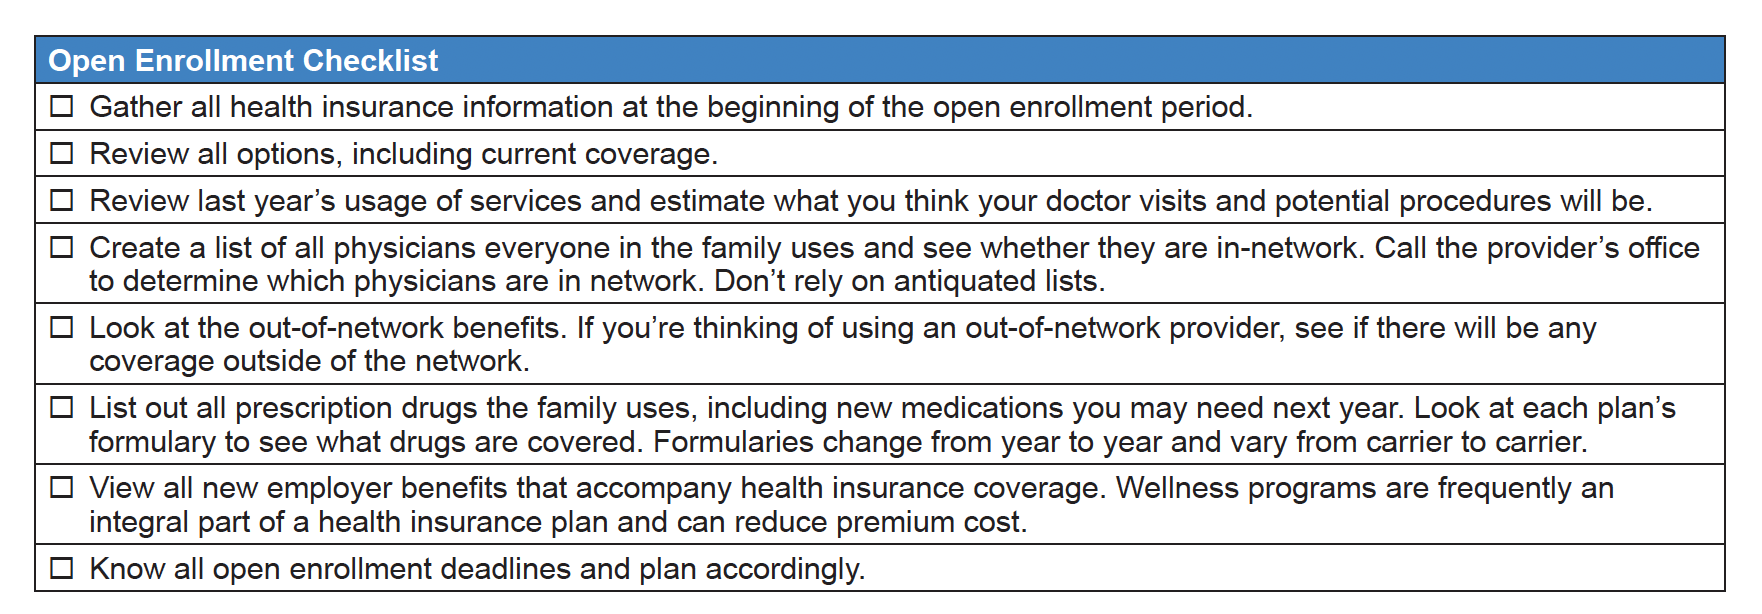 Health care open enrollment checklist